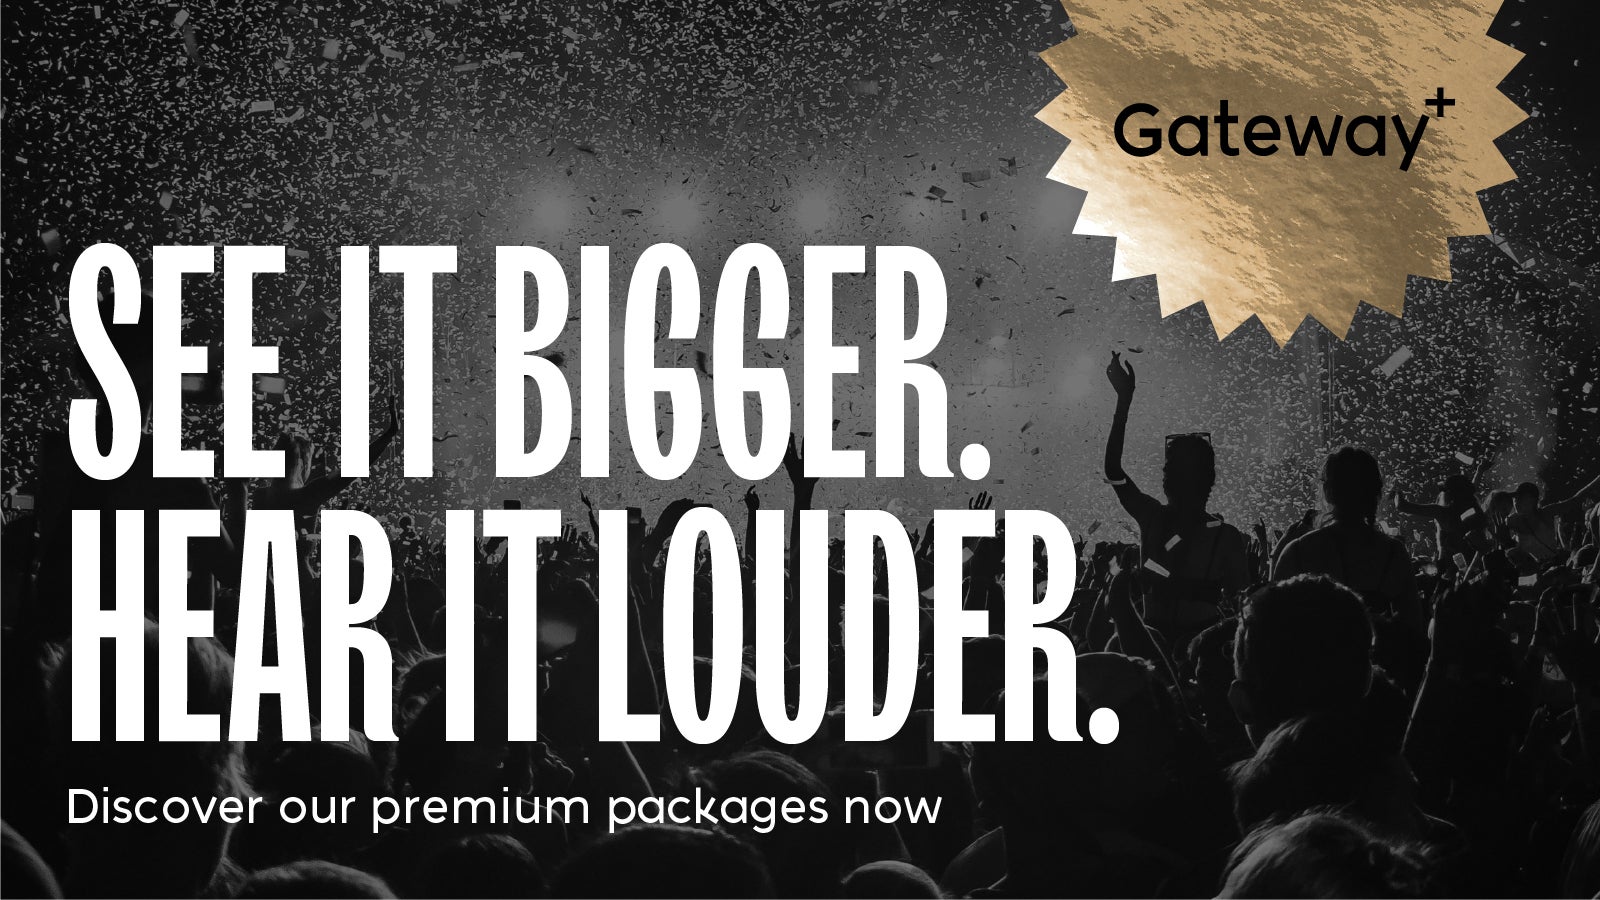 Sophie Ellis Bextor - Premium Package - Gateway+ Event Title Pic